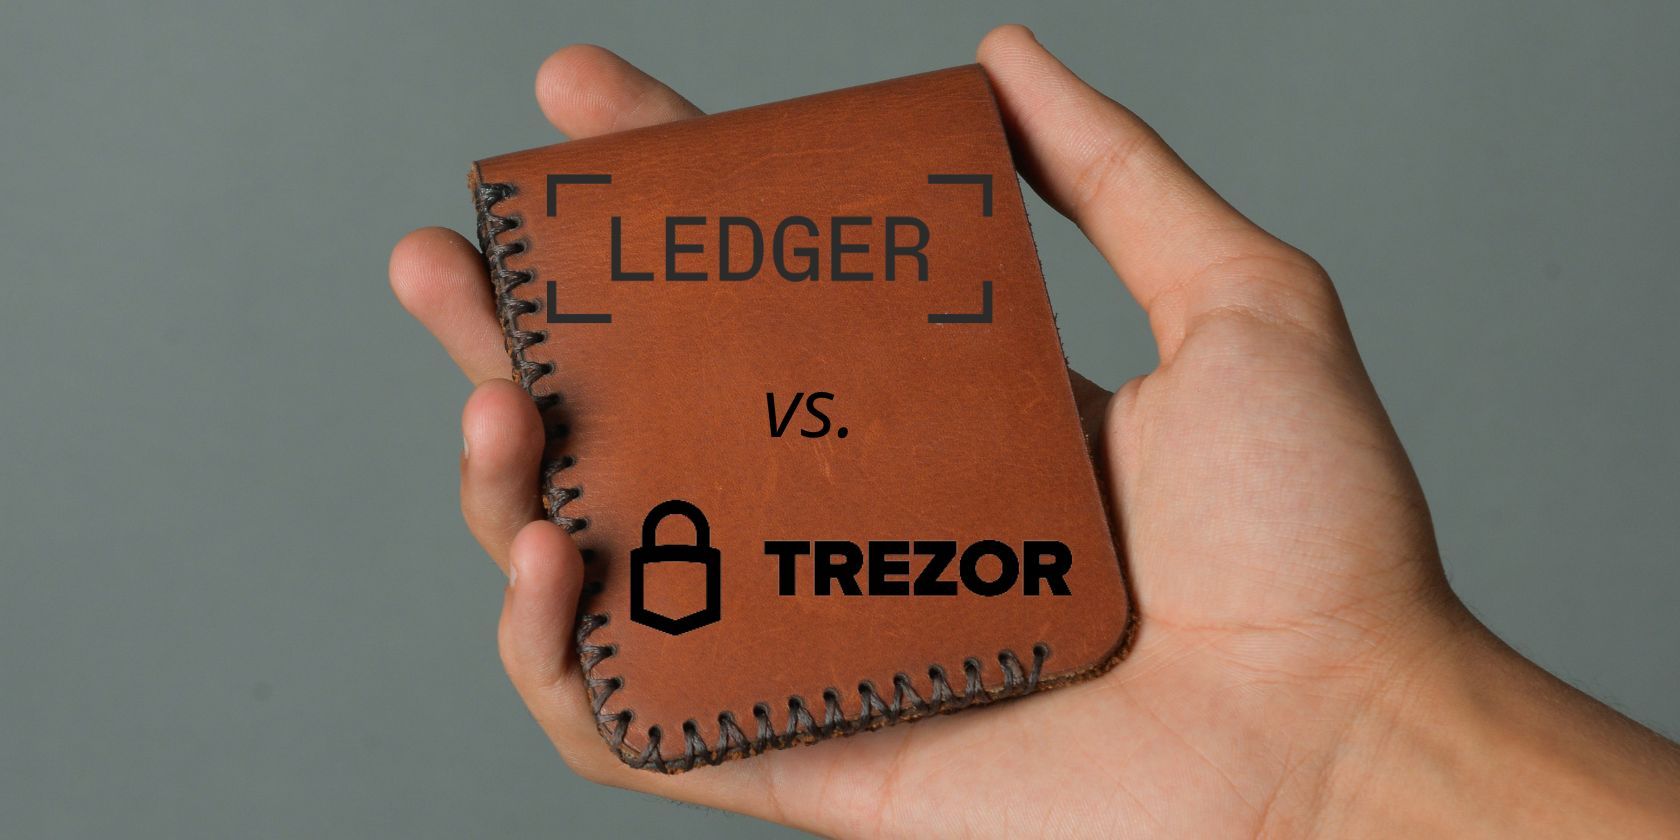 Ledger Nano S vs Trezor One - The Ultimate Comparison